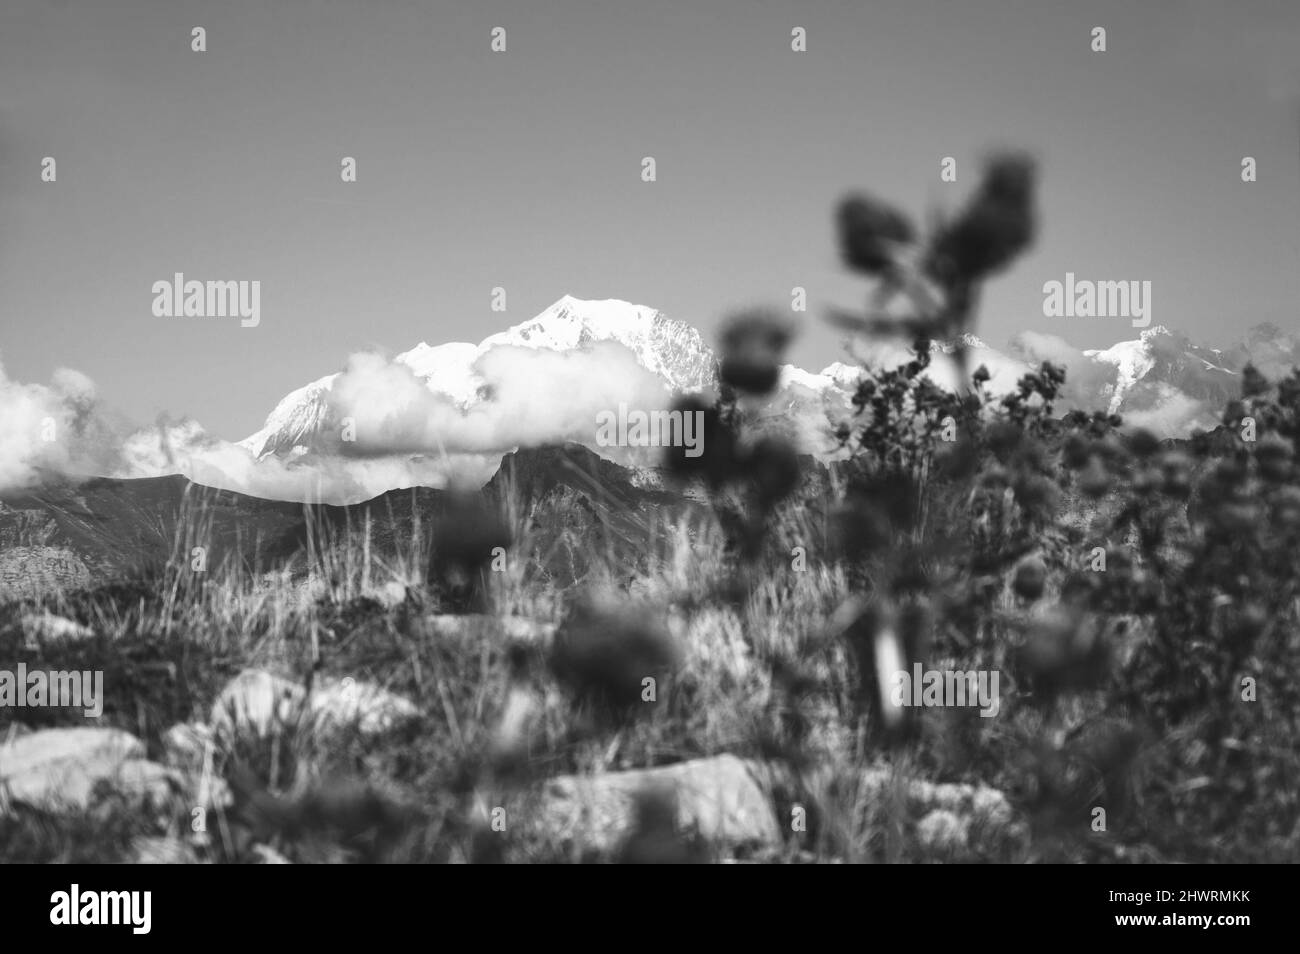 Mont blanc recouvert de neige en été. Vue de Crét de Châtillon, France. Accent sélectif sur les montagnes. Fleurs de chardon floues Banque D'Images